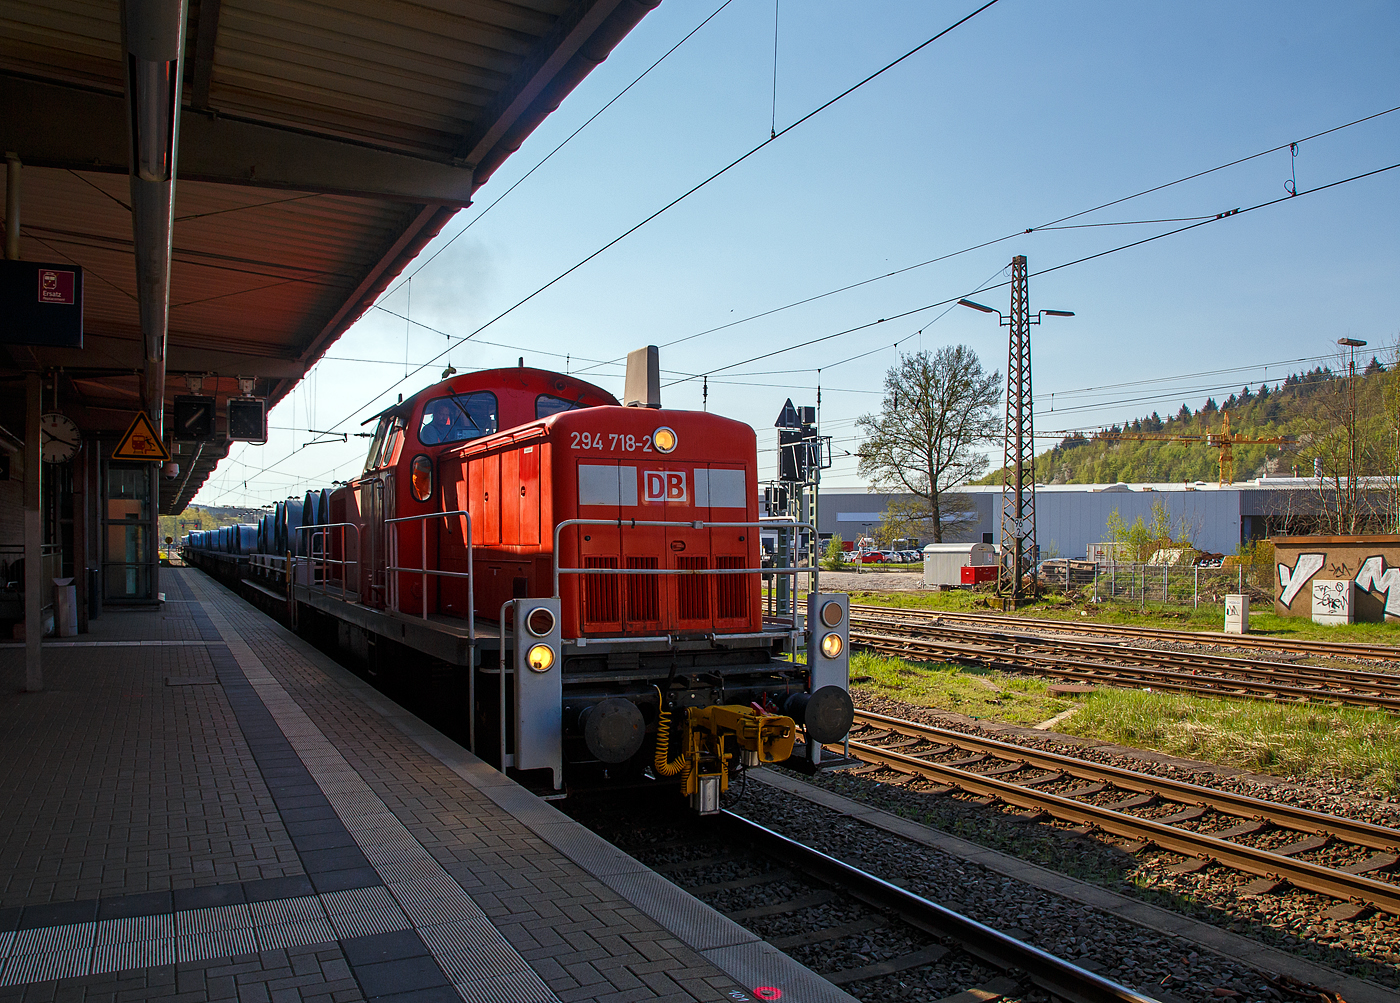 Die 294 718-2 (98 80 3294 718-2 D-DB), eine remotorisierte V 90 der DB Cargo AG fährt am 20.04.2018, mit einem Warmband-Coilzug vom Rbf Kreuztal nach Ferndorf, durch den Bahnhof Kreuztal.

Die Lok wurde 1971 bei MaK in Kiel unter der Fabriknummer 1000526 gebaut und als 290 218-3 an die DB geliefert. Die Ausrüstung mit Funkfernsteuerung (Typ Krauss-Maffei) und Umzeichnung in 294 218-3 erfolgte 1996. Im Jahr 2002 erfolgte durch die DB Fahrzeuginstandhaltung GmbH, in Cottbus eine Remotorisierung durch einen neuen MTU 90° V-8-Zylinder-Dieselmotor mit Common-Rail-Einspritzsystem, Abgas-Turbolader und Ladeluftkühlung, vom Typ 8V 4000 R41. Der Motor ist auf eine Leistung von 1.000 kW (1.341 PS) bei 1.800 U/min gedrosselt. Auch wurden eine neue Lüfteranlage und ein neuer Luftpresser eingebaut, zudem bekam die Lok ein Umlaufgeländer. Durch die Remotorisierung und den Umbau erfolgte auch die Umzeichnung in die heutige 294 718-2.